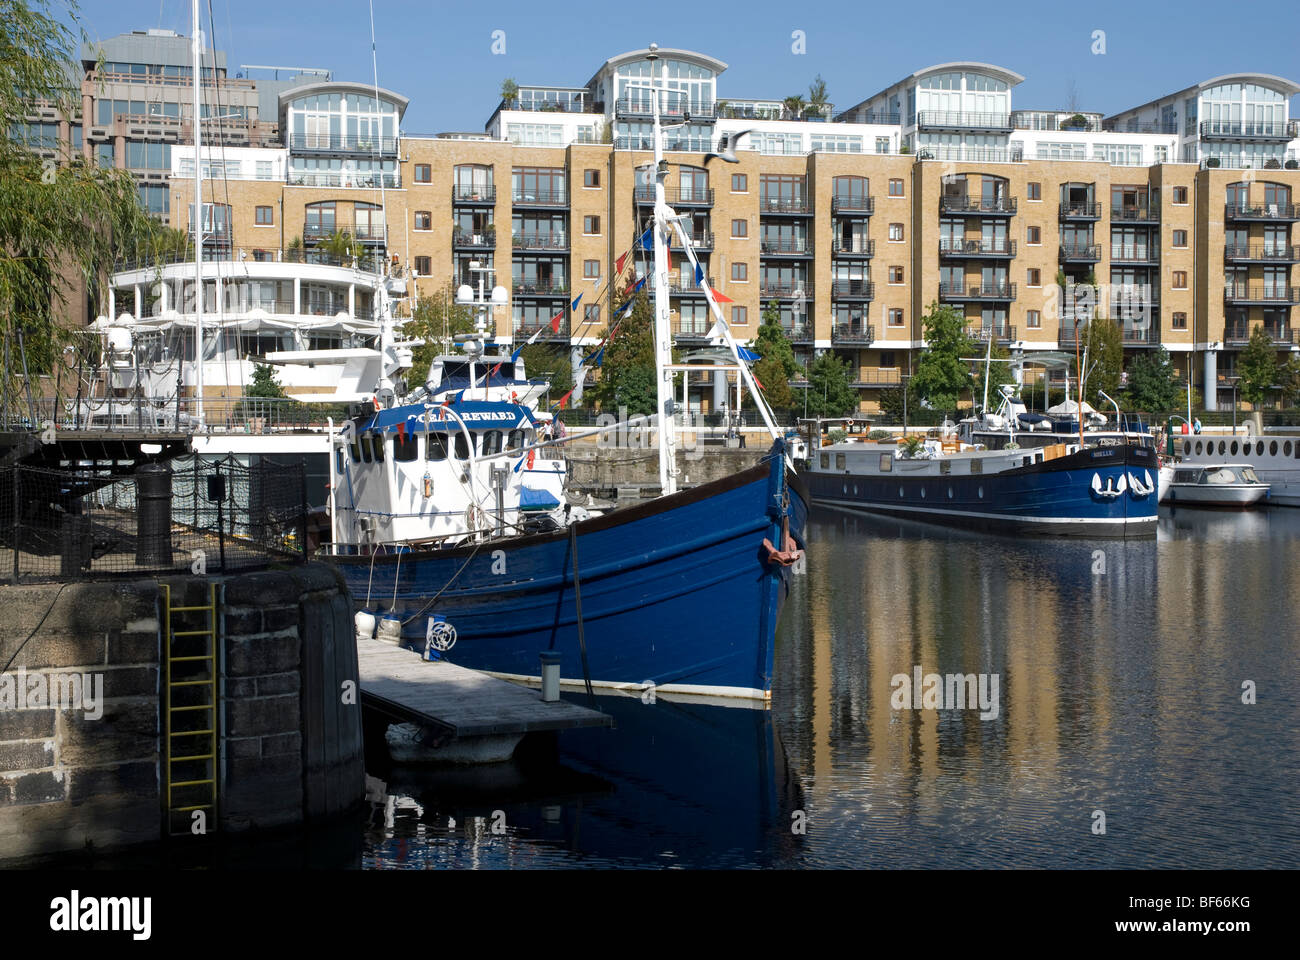 Boats in the marina at St Katharines Dock London E1 Stock Photo